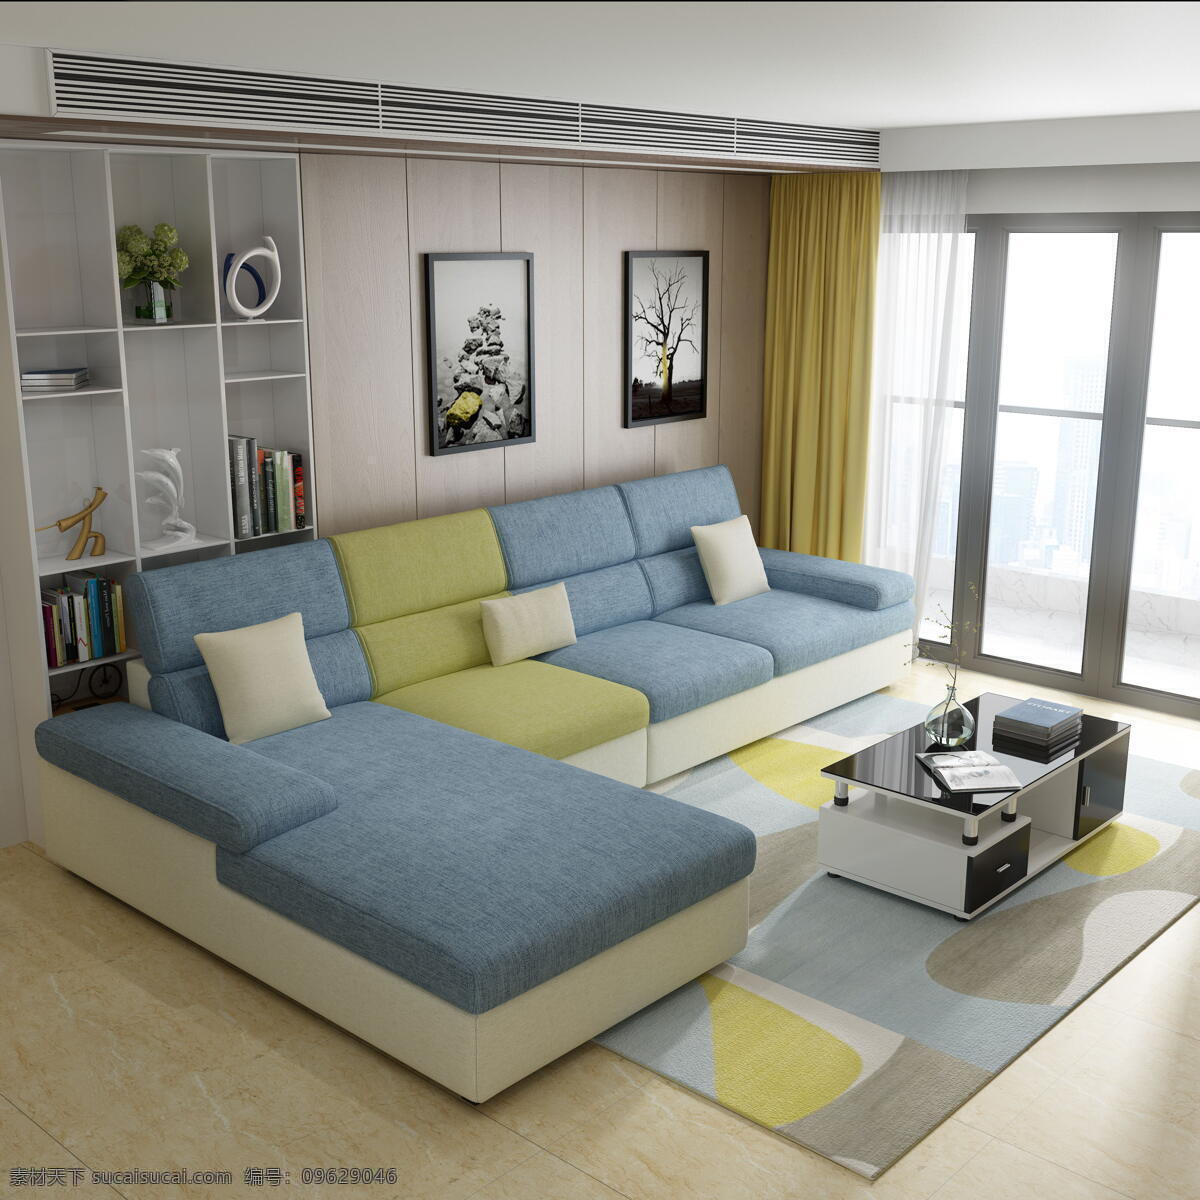 浅色沙发 布艺沙发 现代沙发 单双贵沙发 布沙发 现代简约 客厅 沙发 沙发家具 贵妃沙发